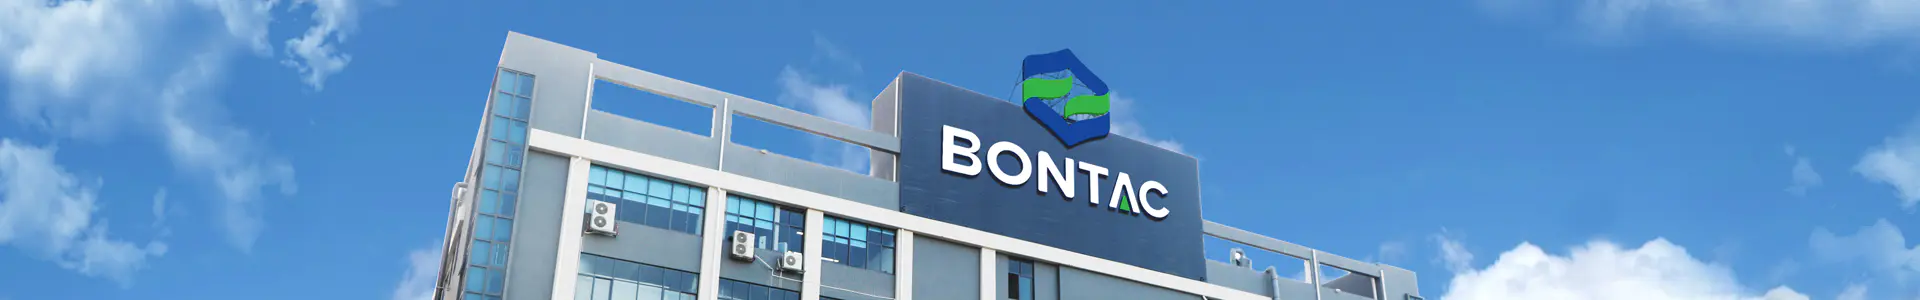 Profesionální výrobce metabolických doplňků - Bontac